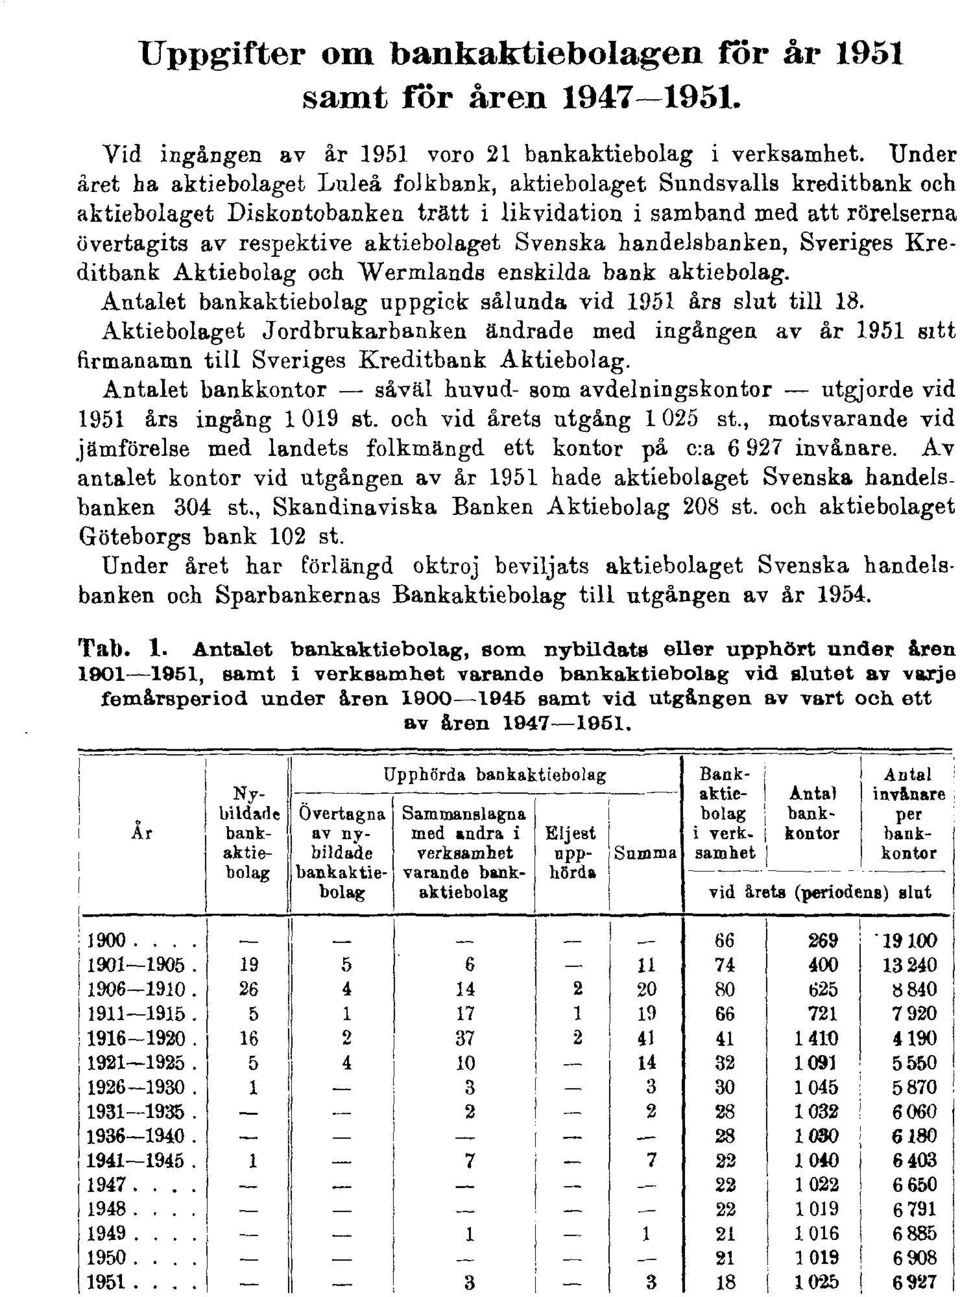 Svenska handelsbanken, Sveriges Kreditbank Aktiebolag och Wermlands enskilda bank aktiebolag. Antalet bankaktiebolag uppgick sålunda vid 1951 års slut till 18.